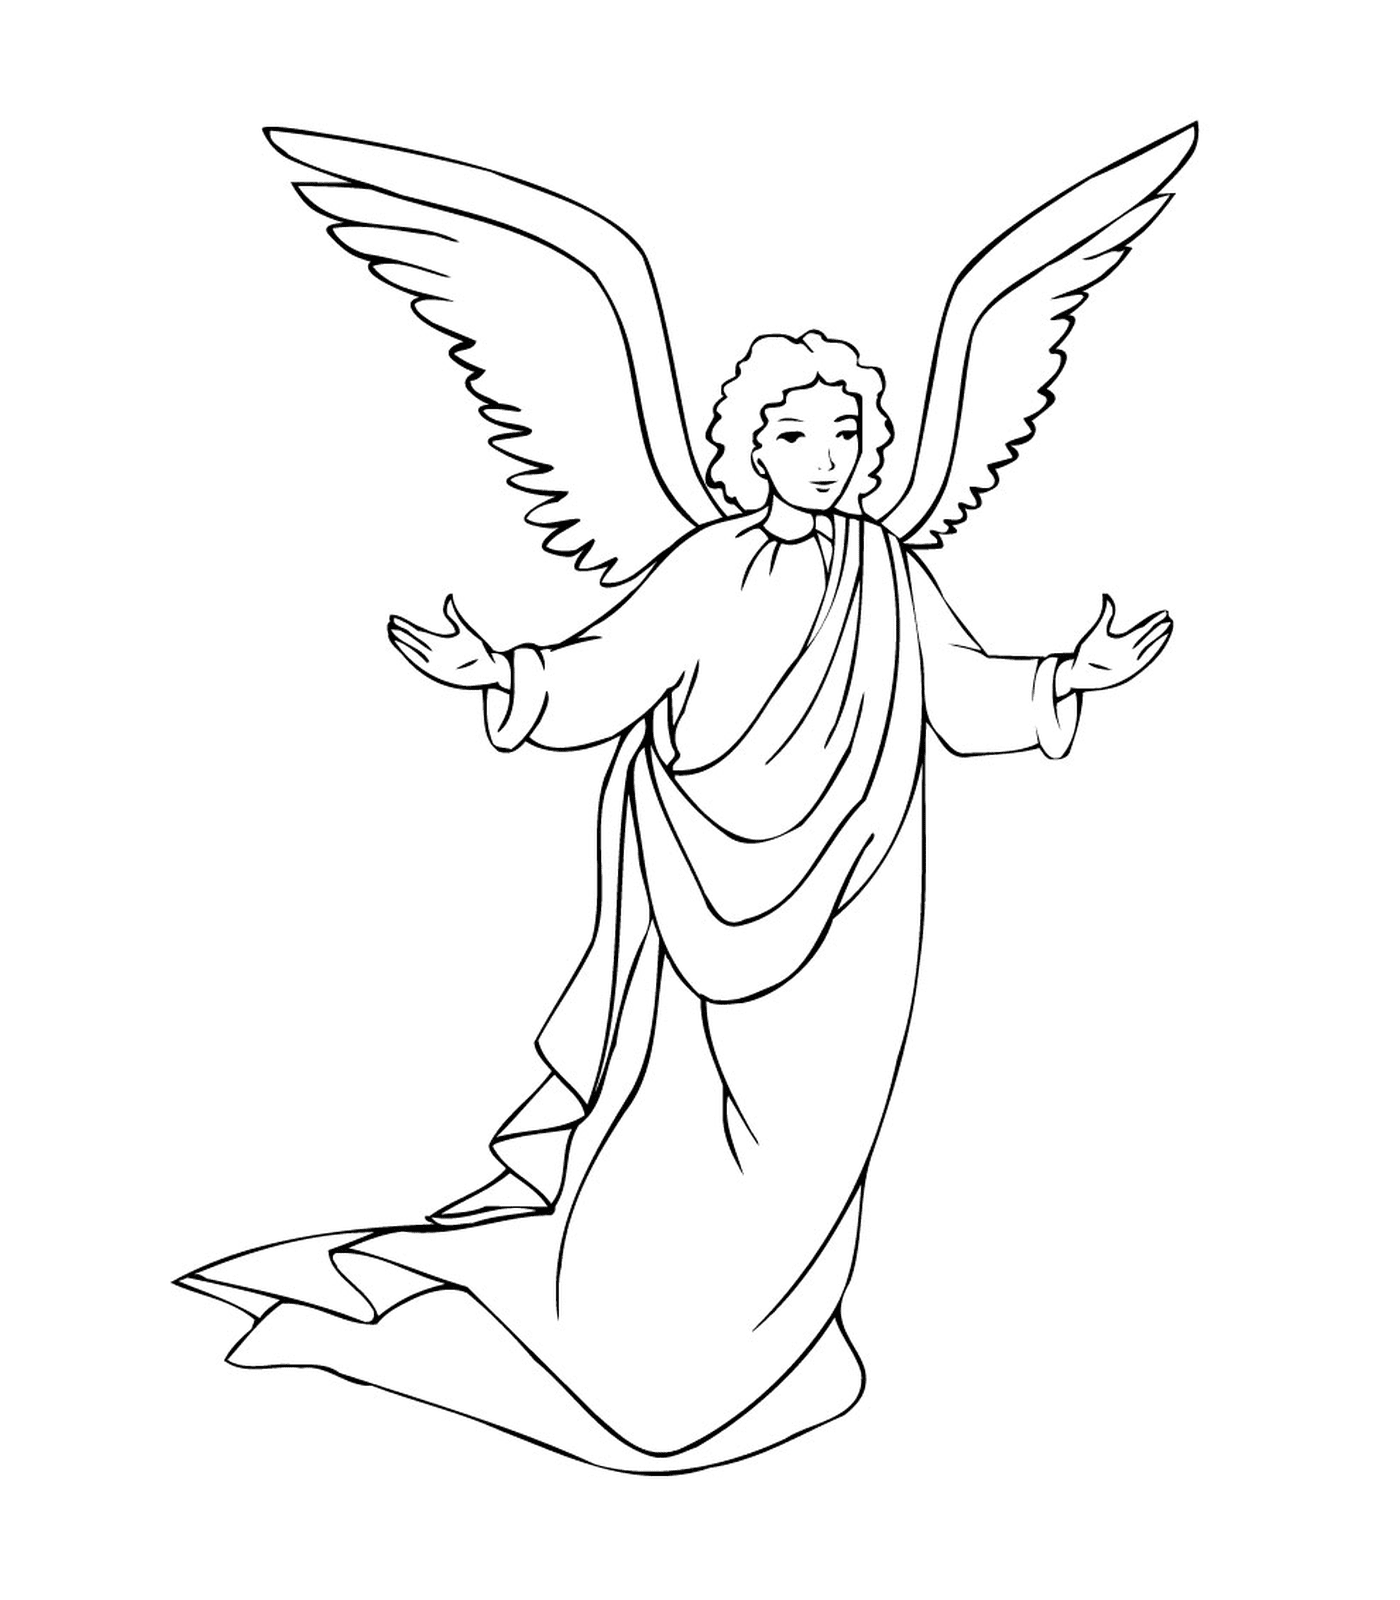  Der Erzengel Gabriel mit den Flügeln eingesetzt 